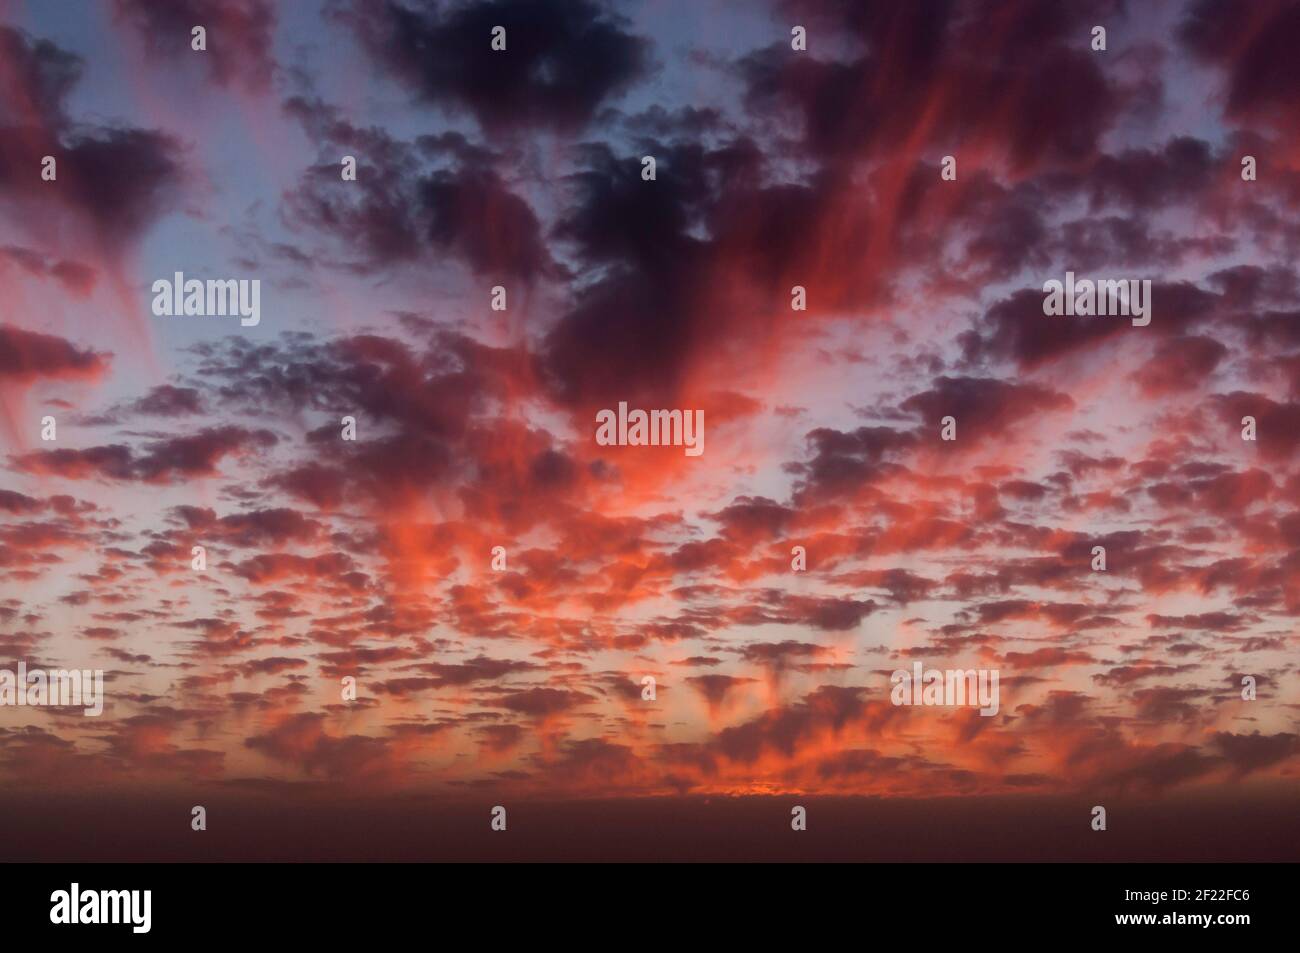 Vue fantastique d'un ciel du soir dans différentes nuances de rouge et de nombreux petits nuages Banque D'Images